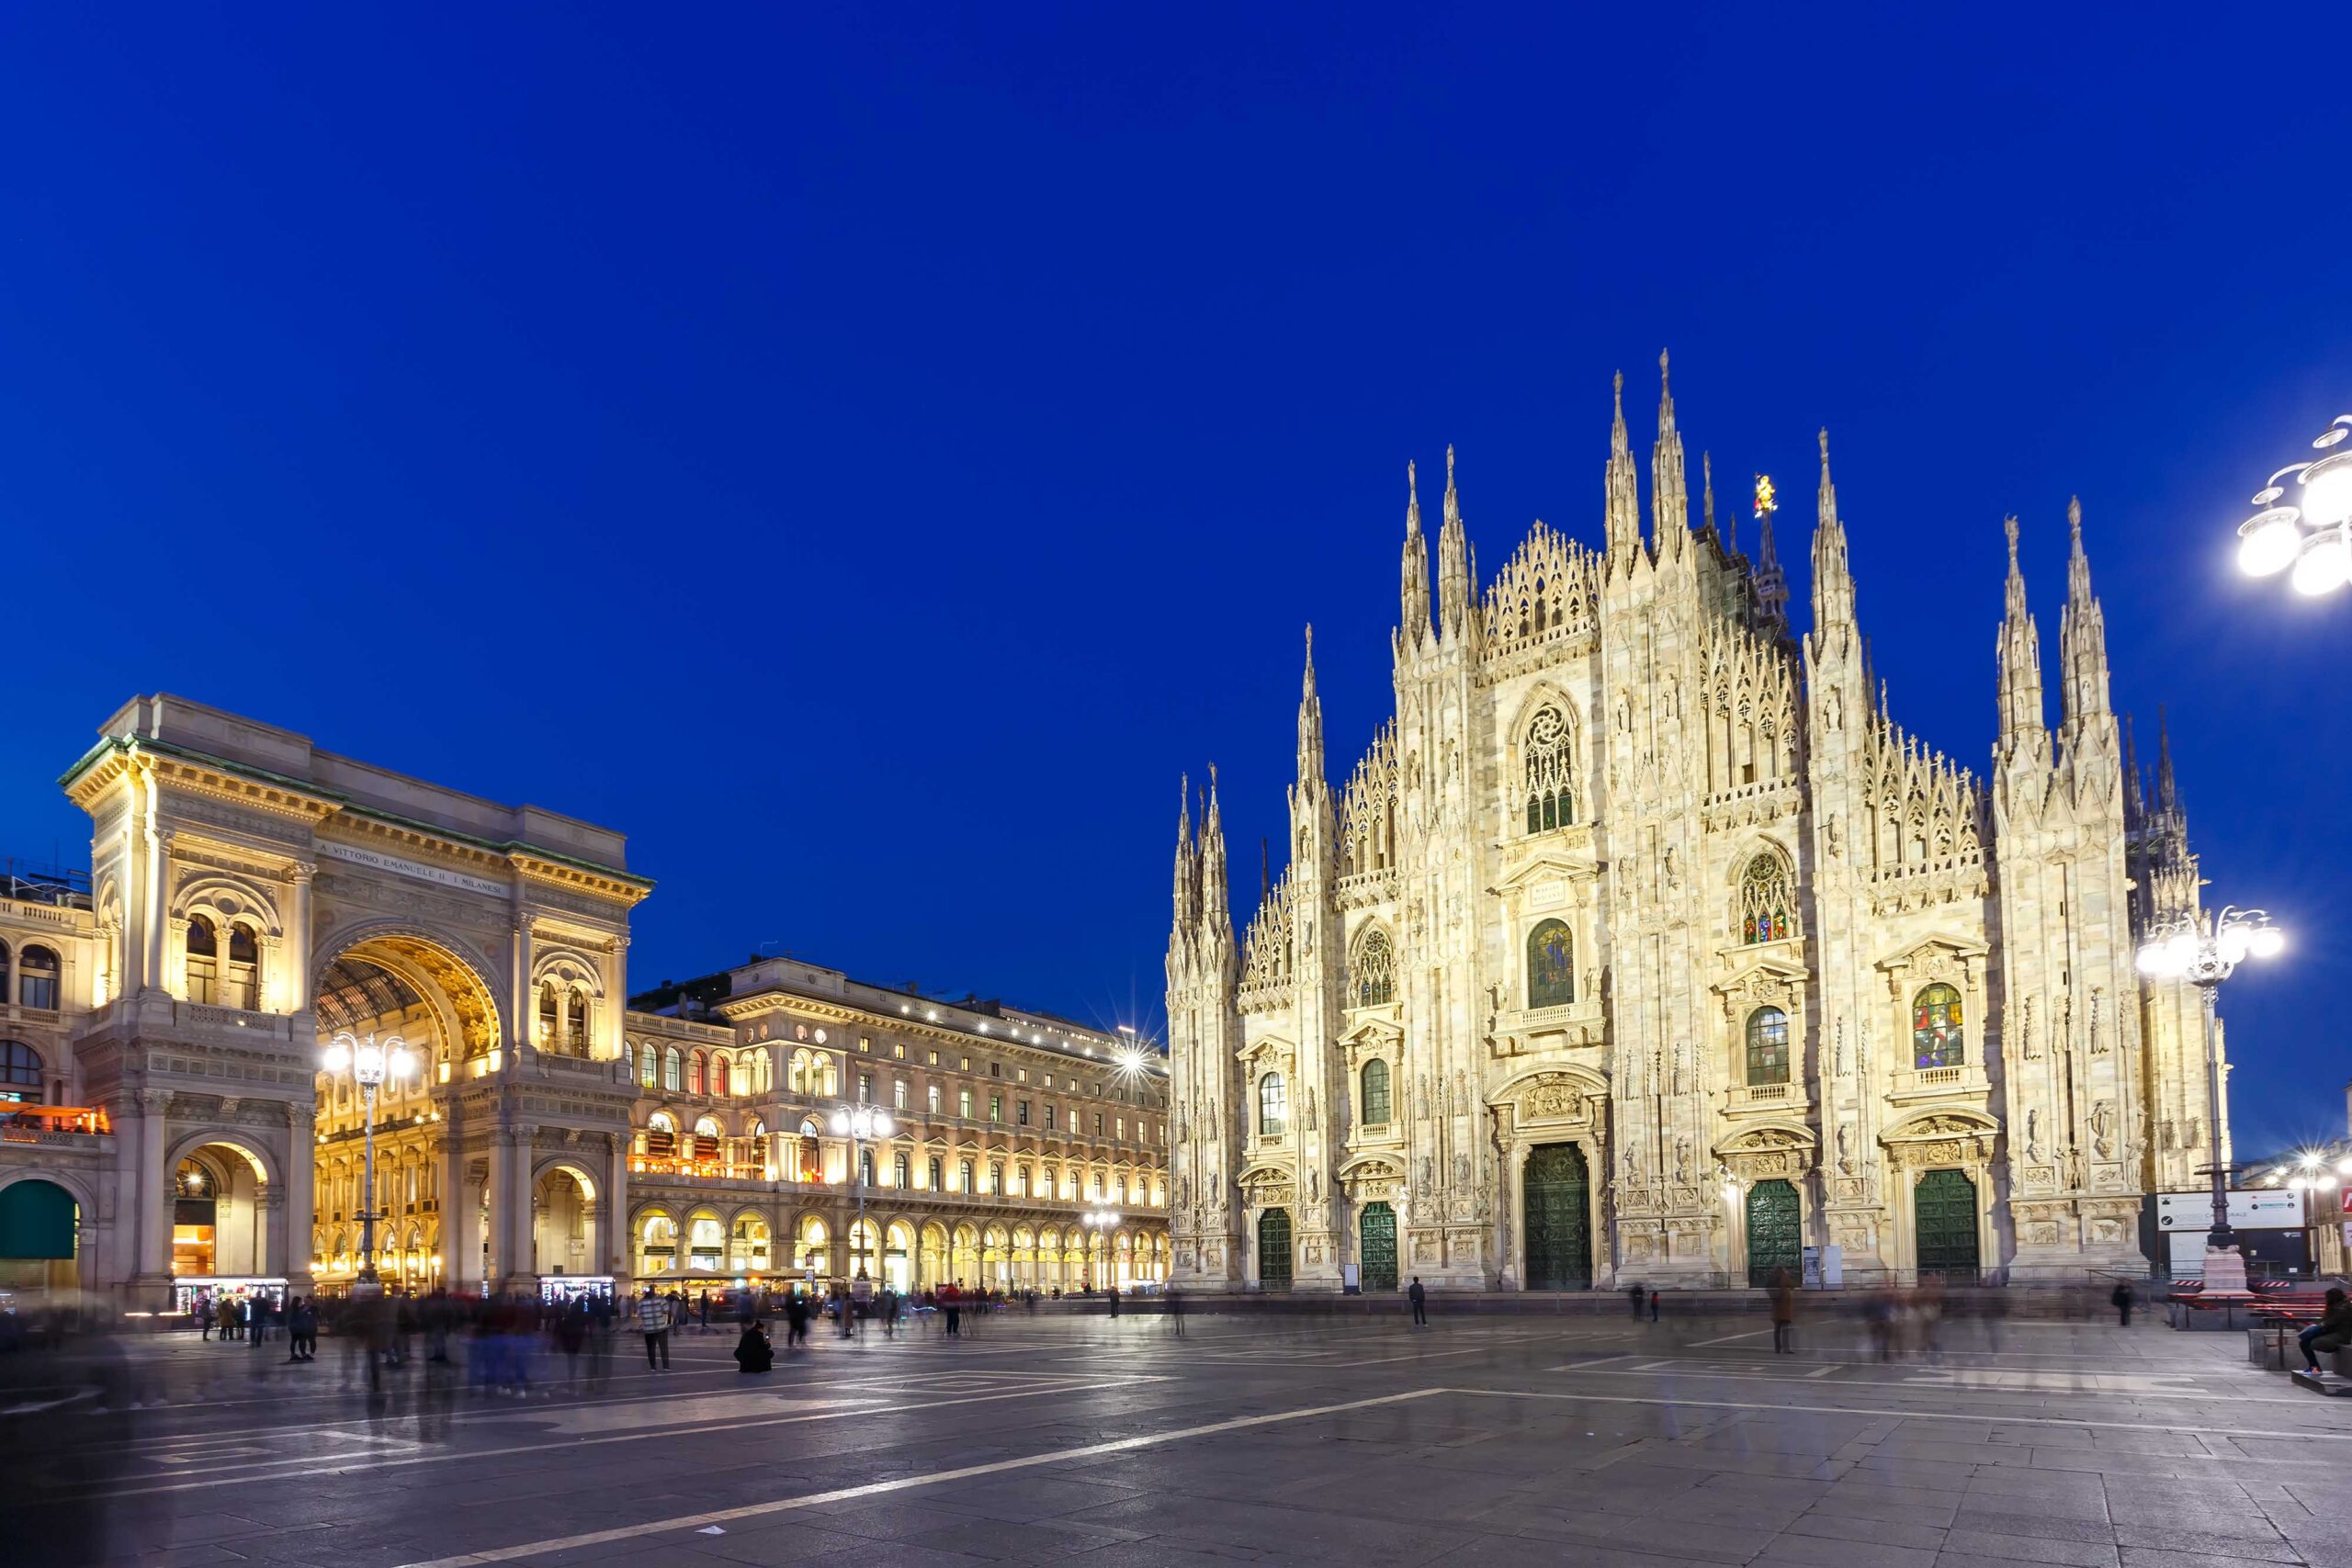 มหาวิหารมิลาน - Duomo di Milano